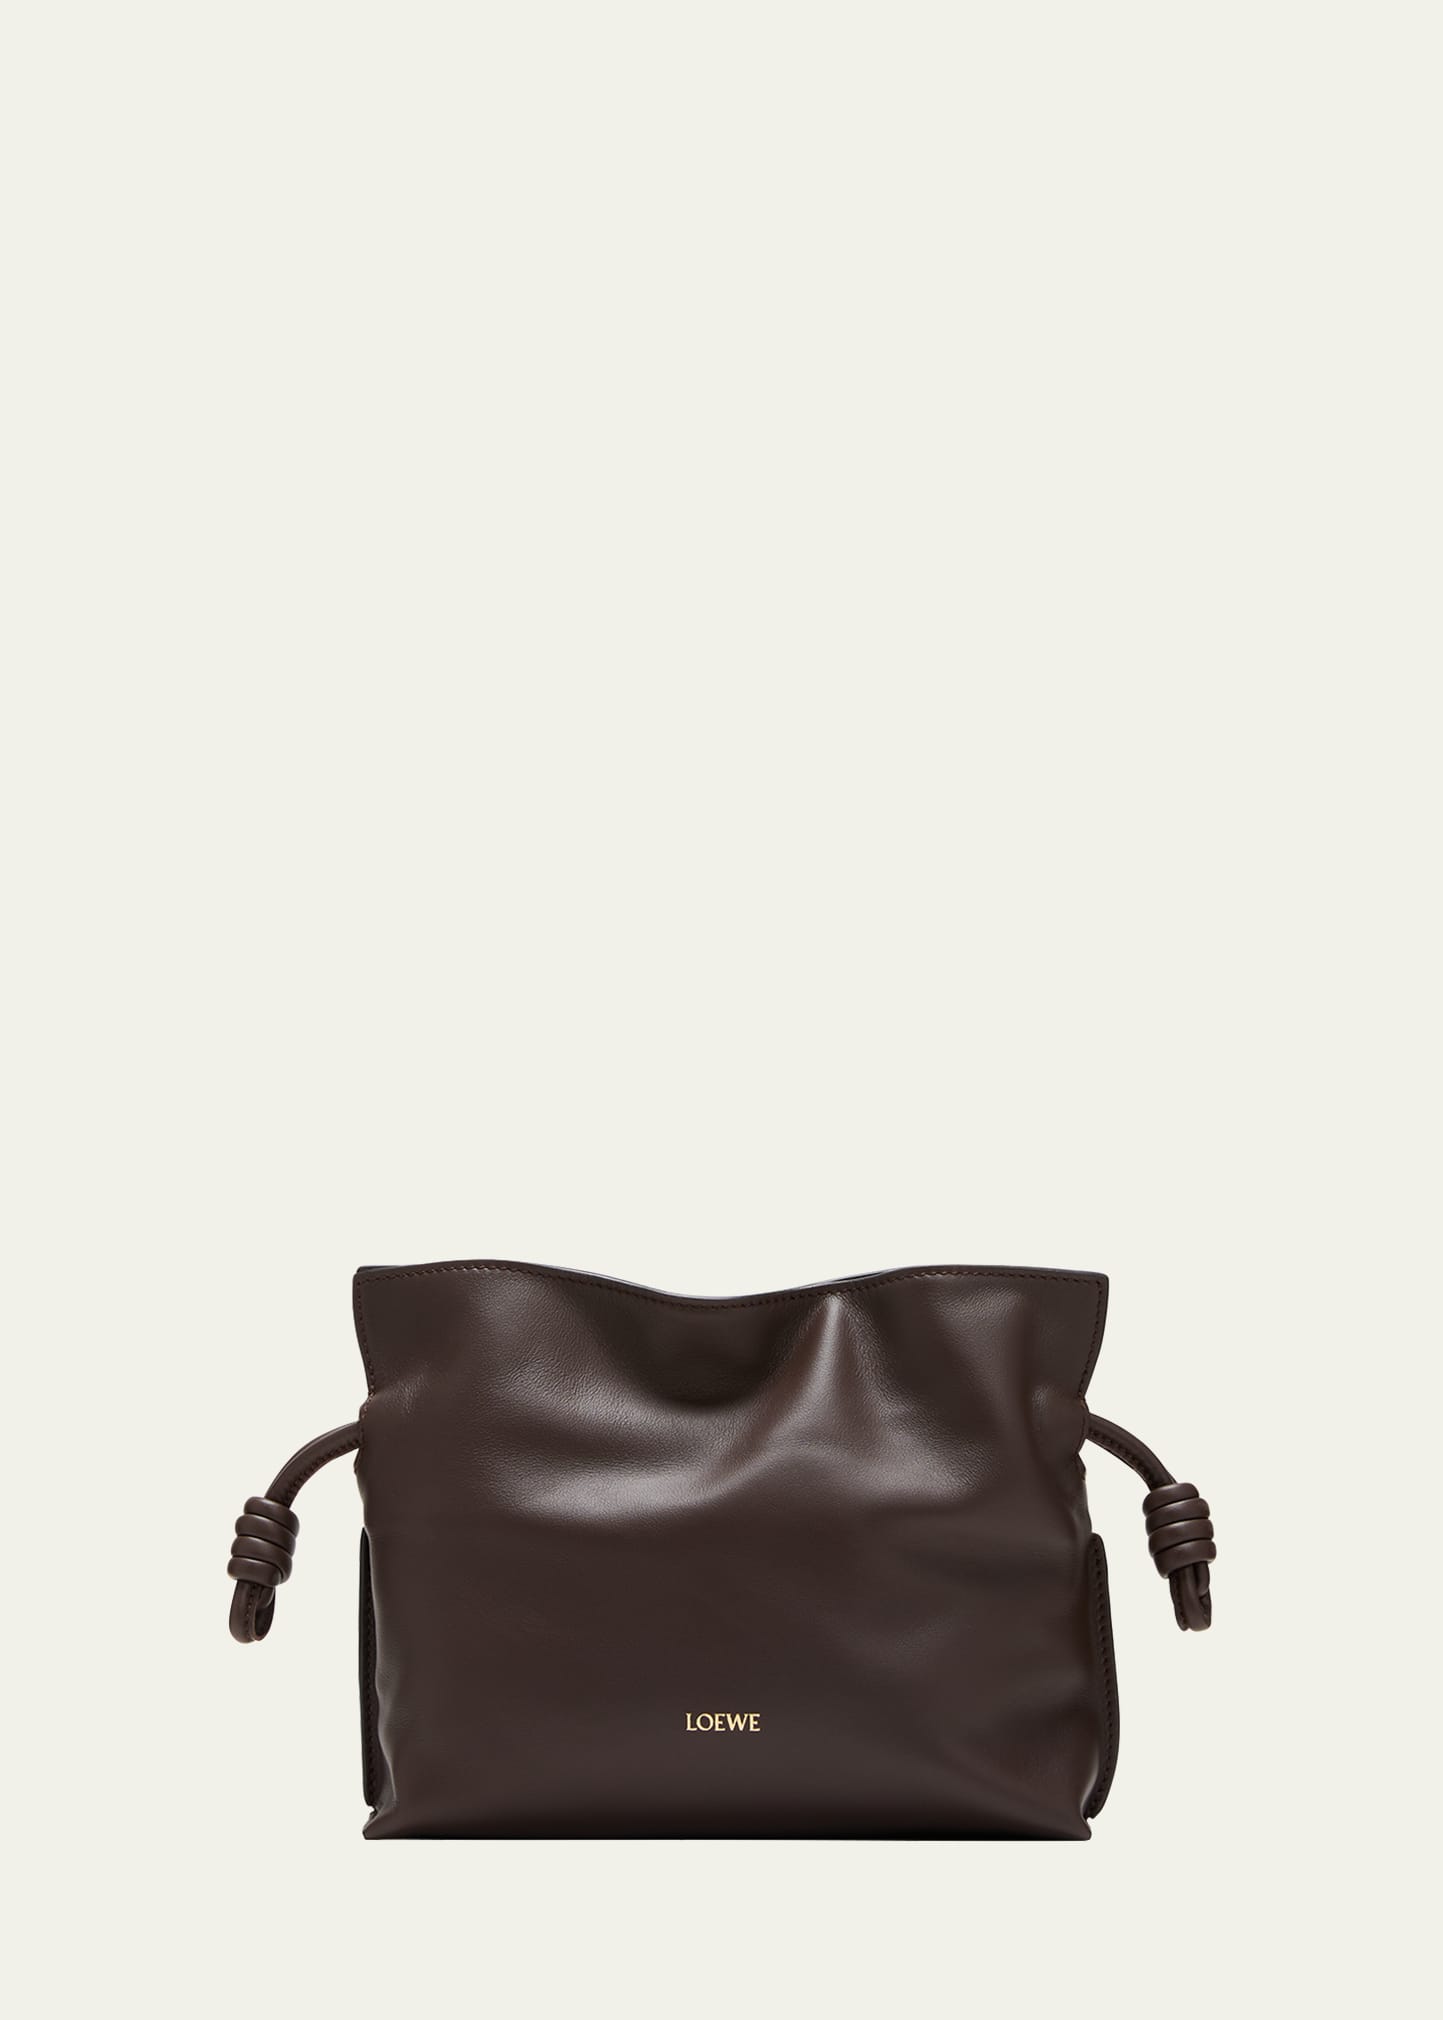 Loewe Flamenco Mini Leather Clutch Bag In 3606 Chocolate